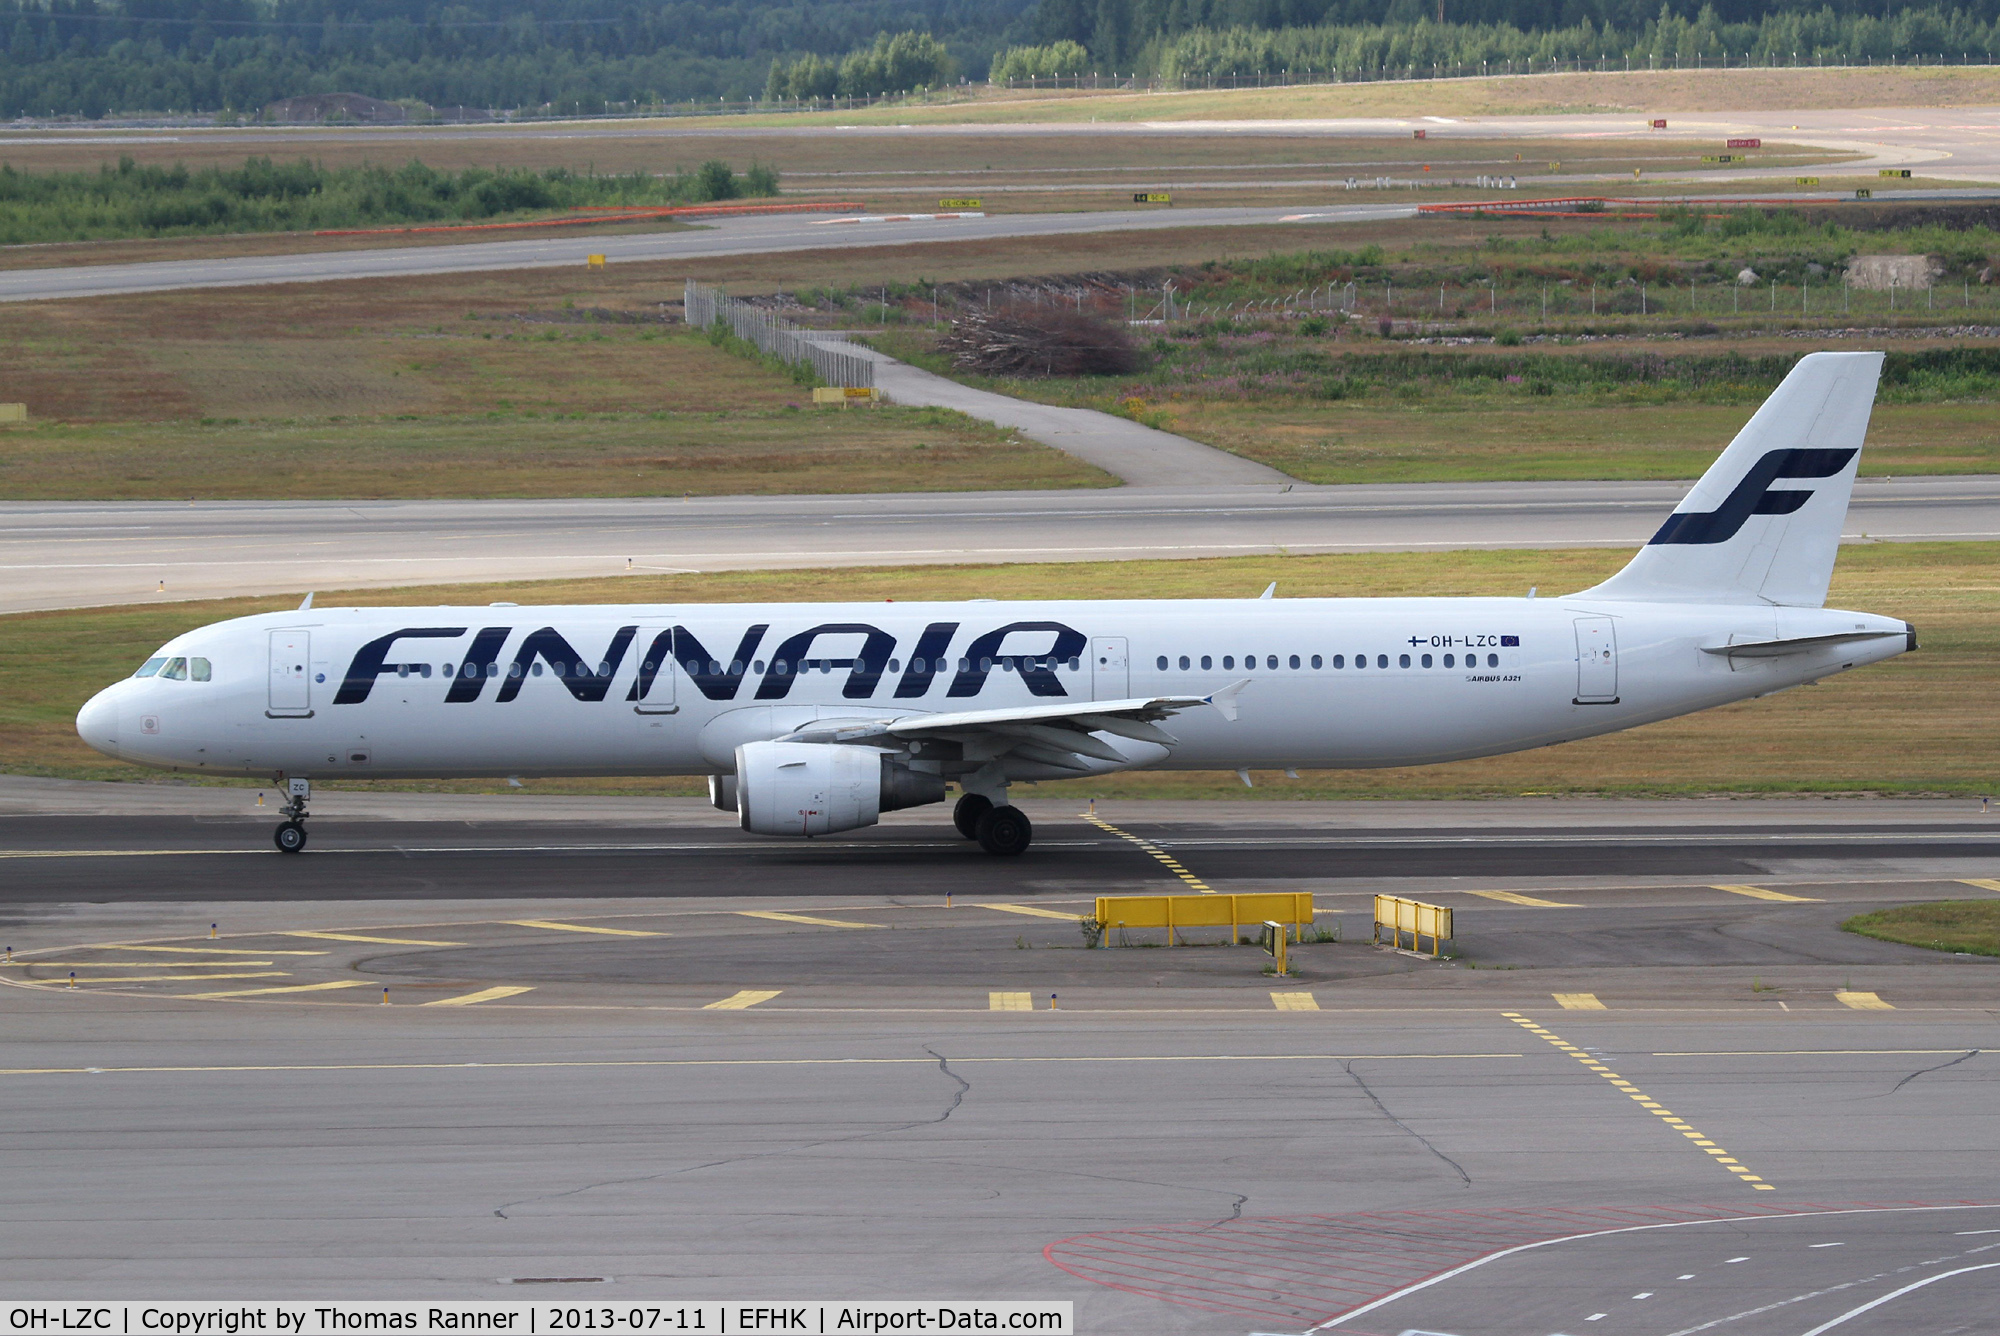 OH-LZC, 2000 Airbus A321-211 C/N 1185, Finnair A321